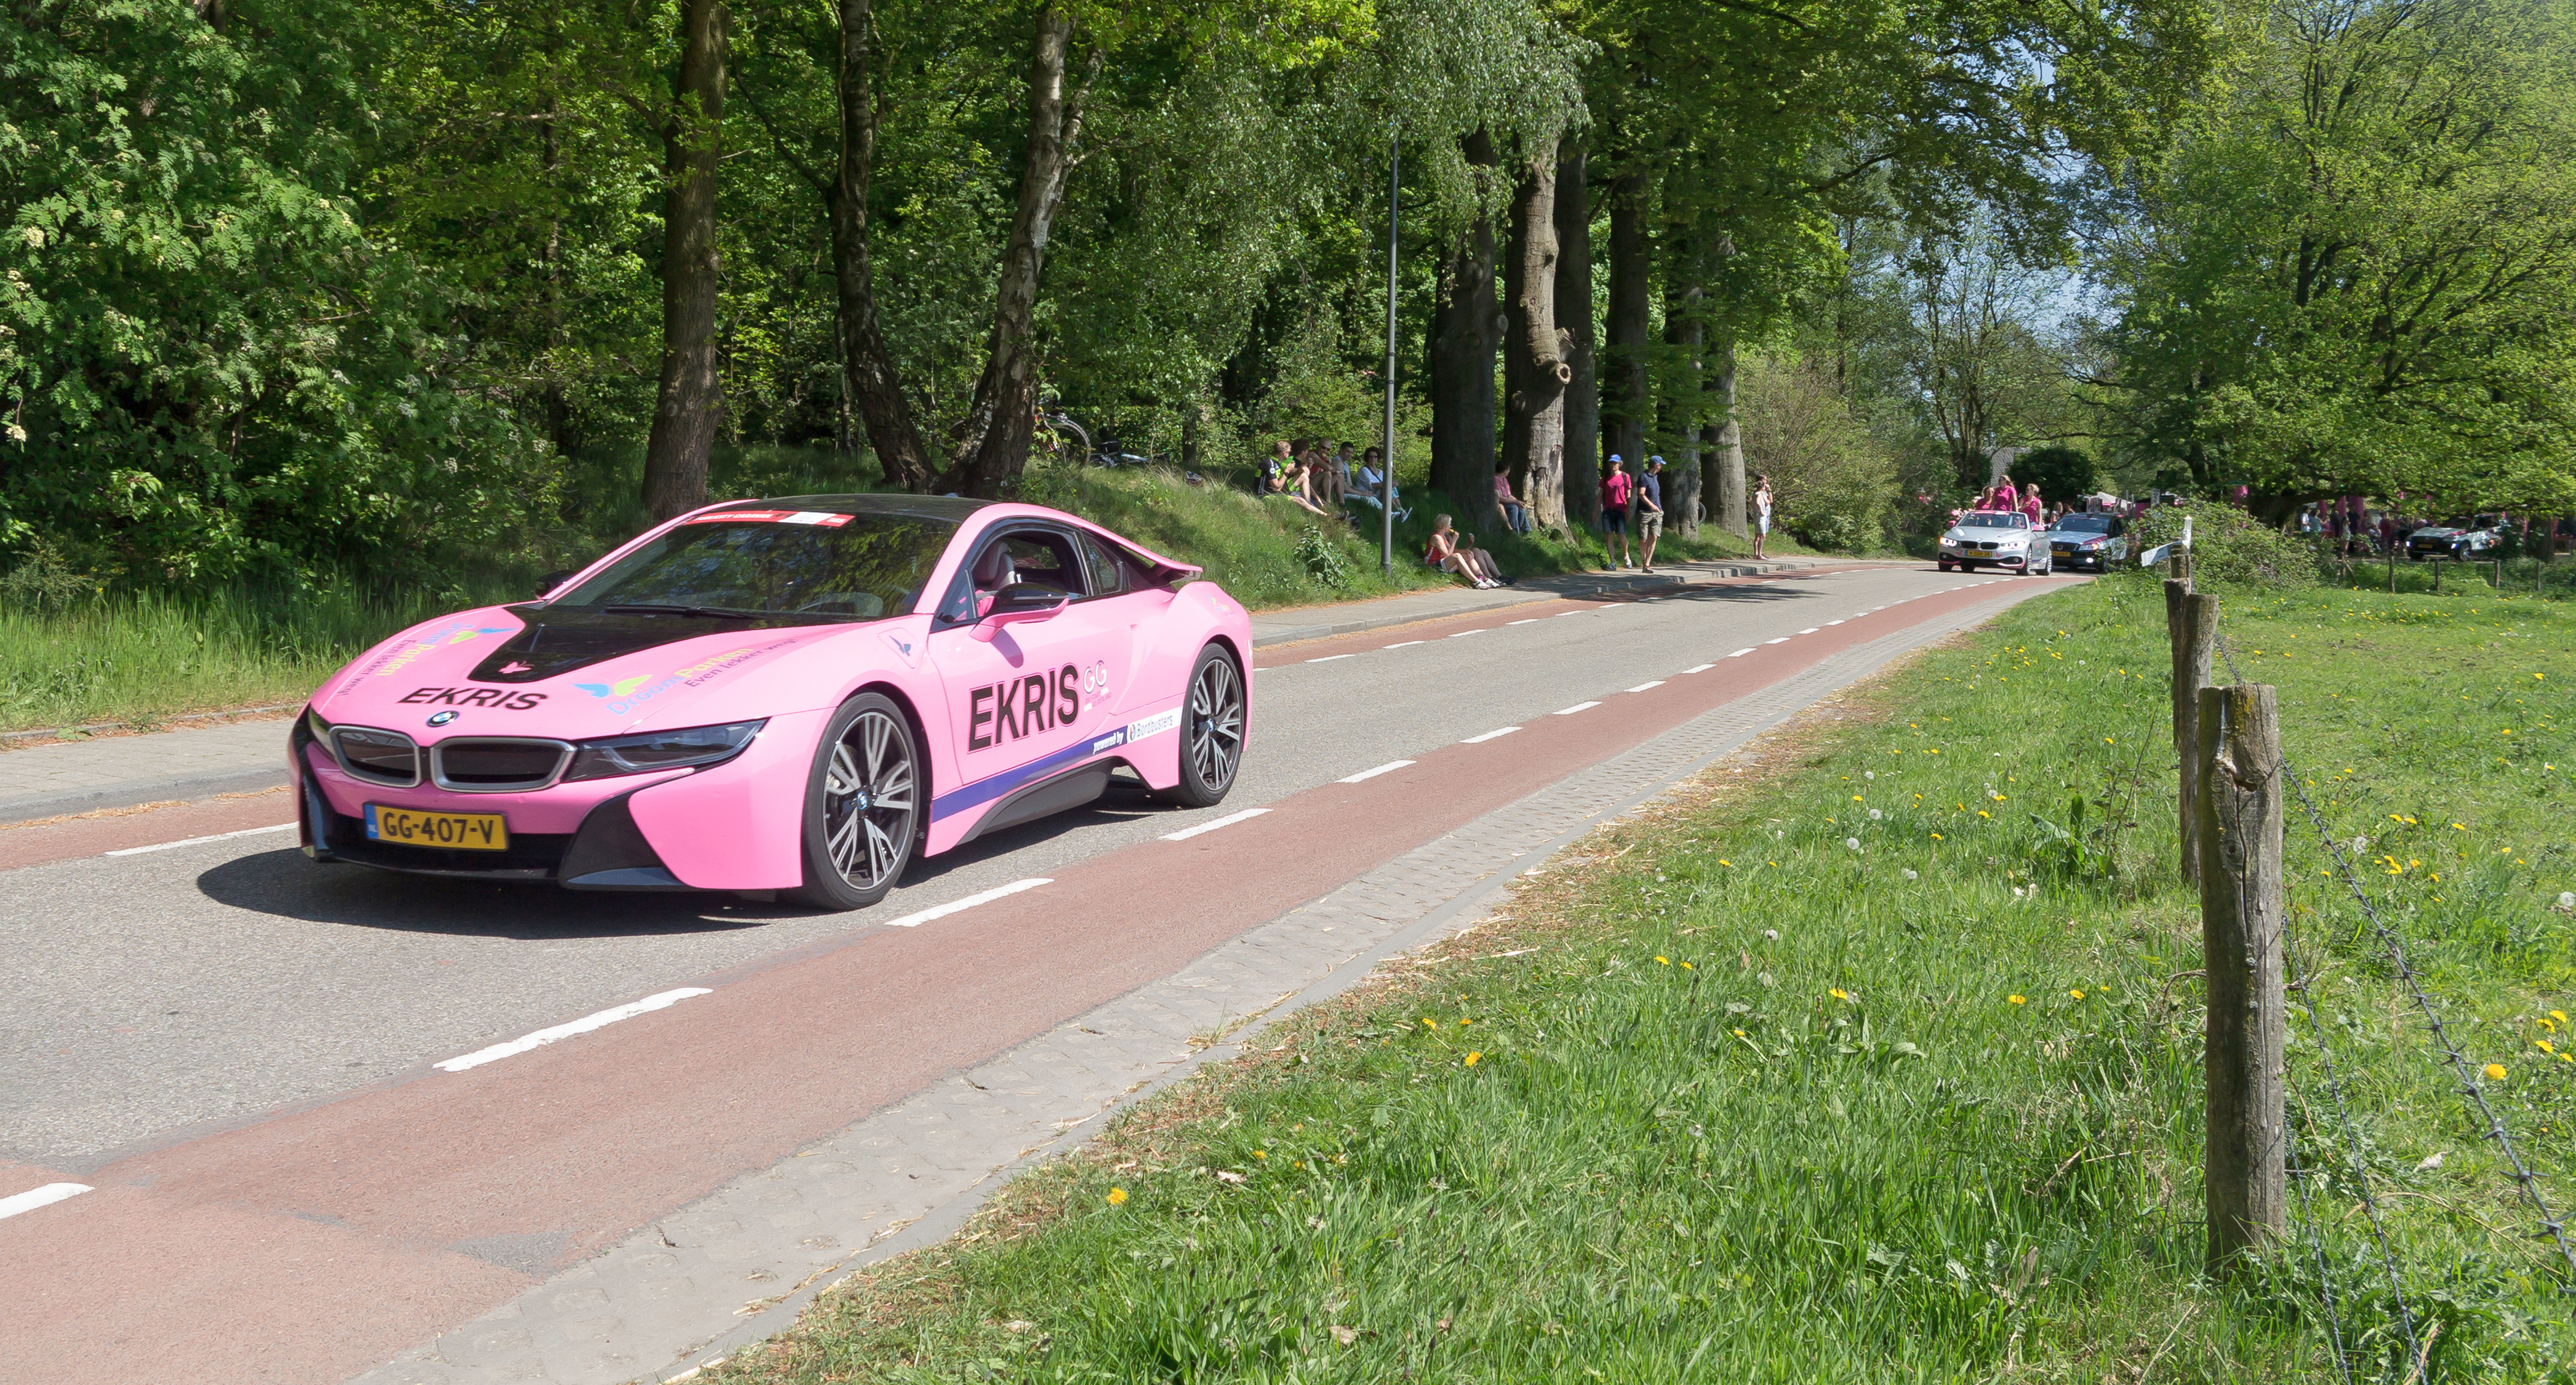 Vlak voor de Posbank, Giro d'Italia IMG 0167 sportauto reclamecaravaan 2016-05-08 15.08